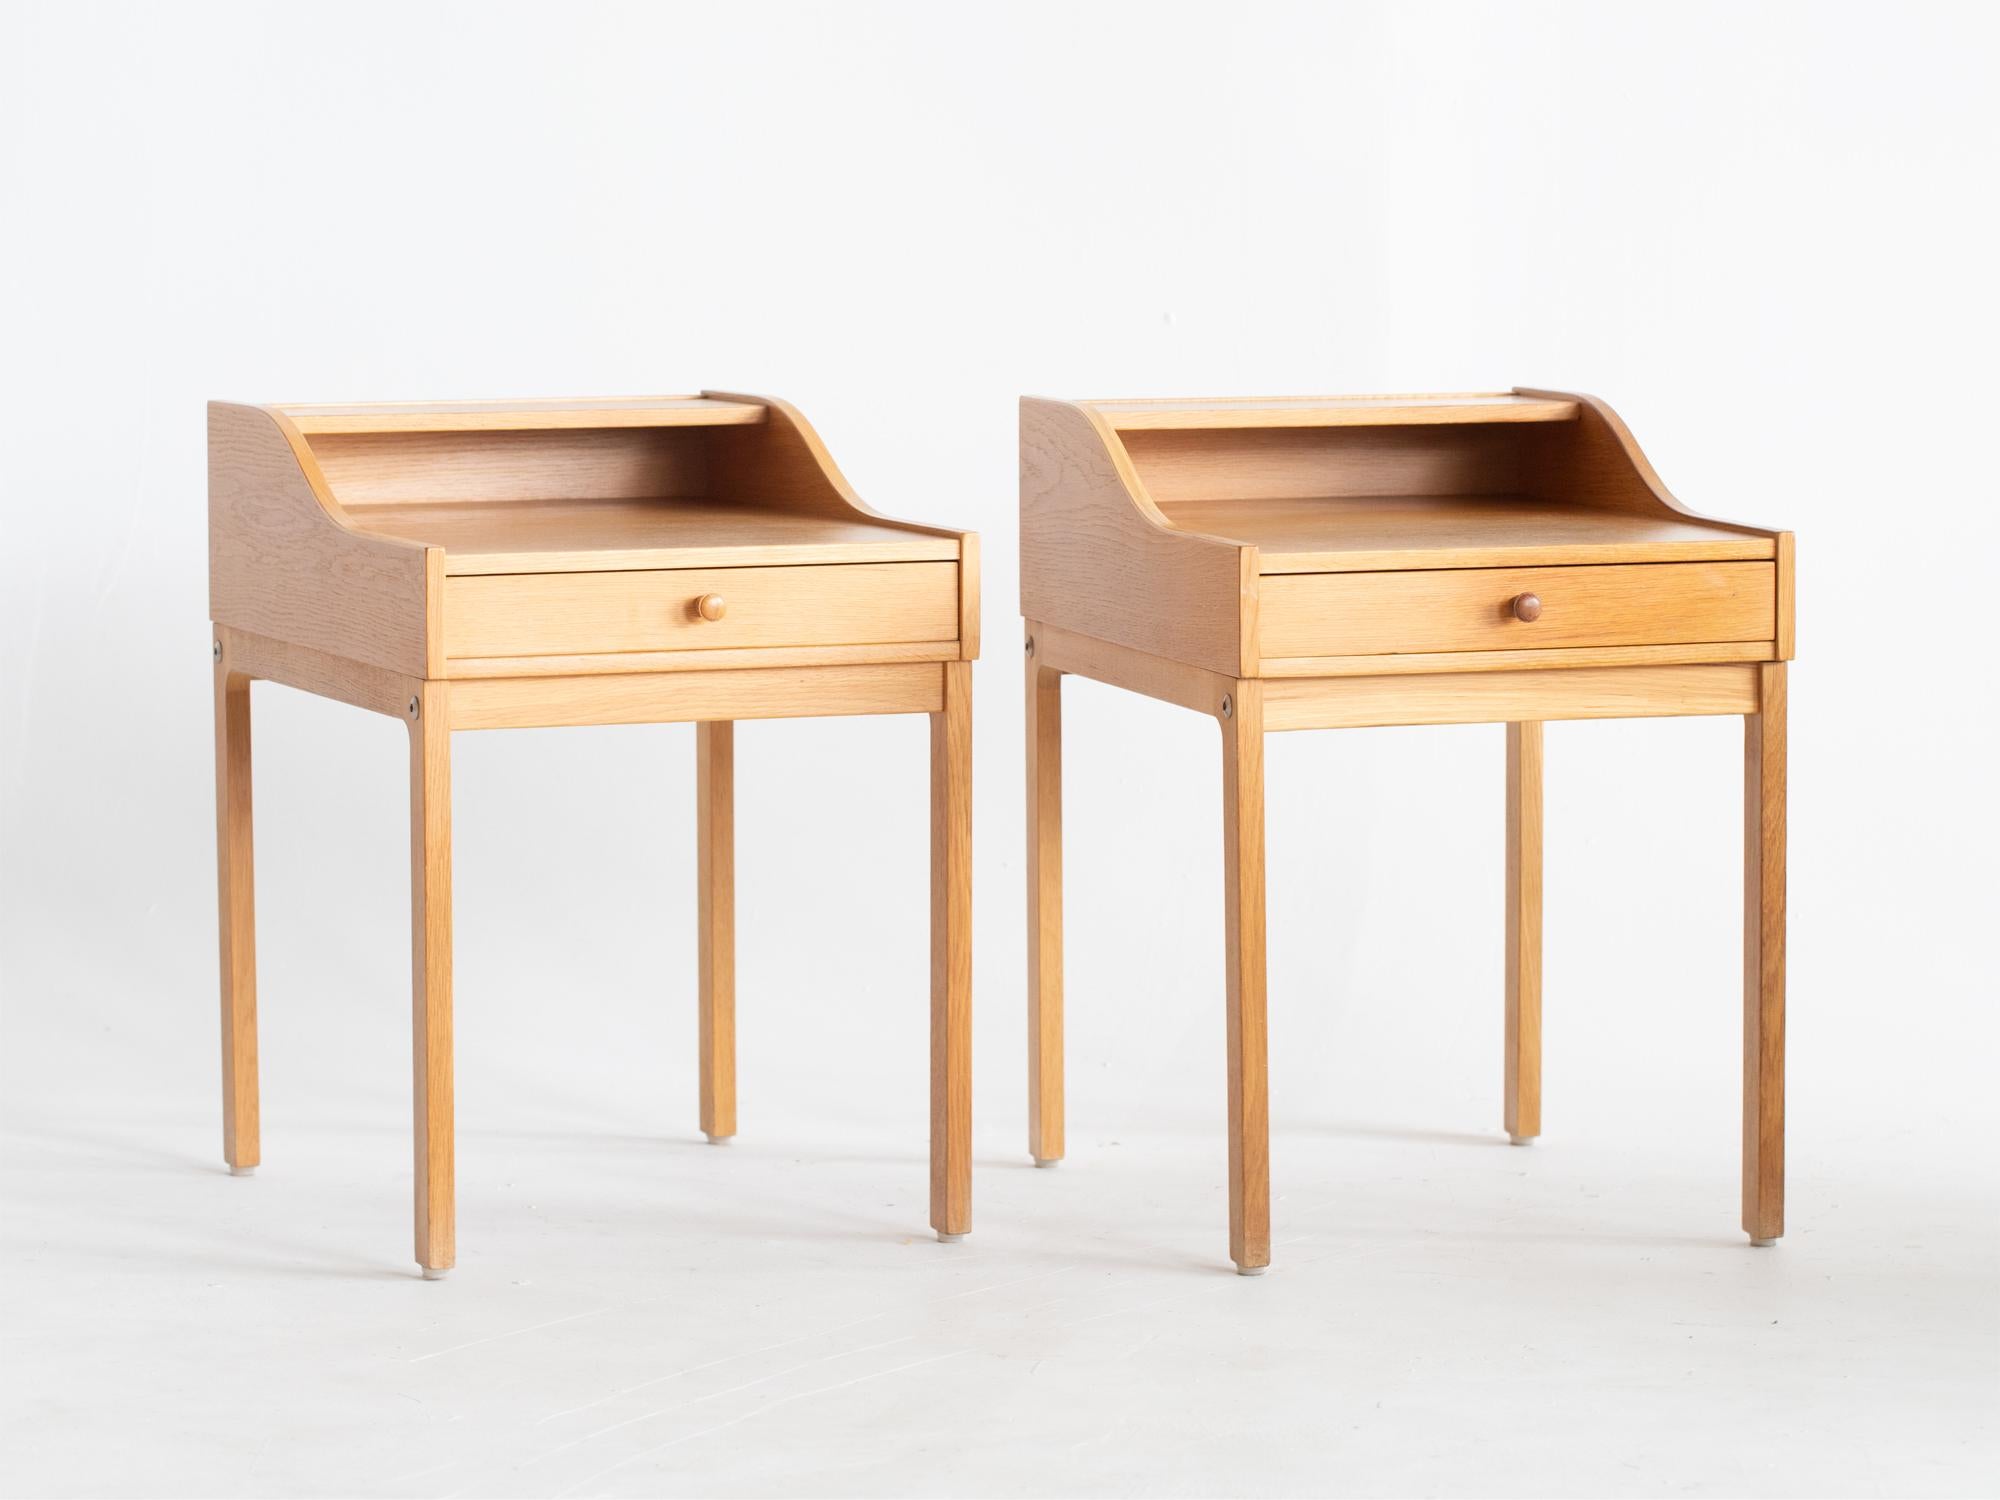 Paire de tables de chevet à un tiroir en chêne et en placage de chêne de Möbel-Ikea. Suédois, c. C. 1960.

Les deux sont en bon état, avec une légère usure cosmétique.

55 x 38.5 x 52.5 cm

21.7 x 15.2 x 20.7 